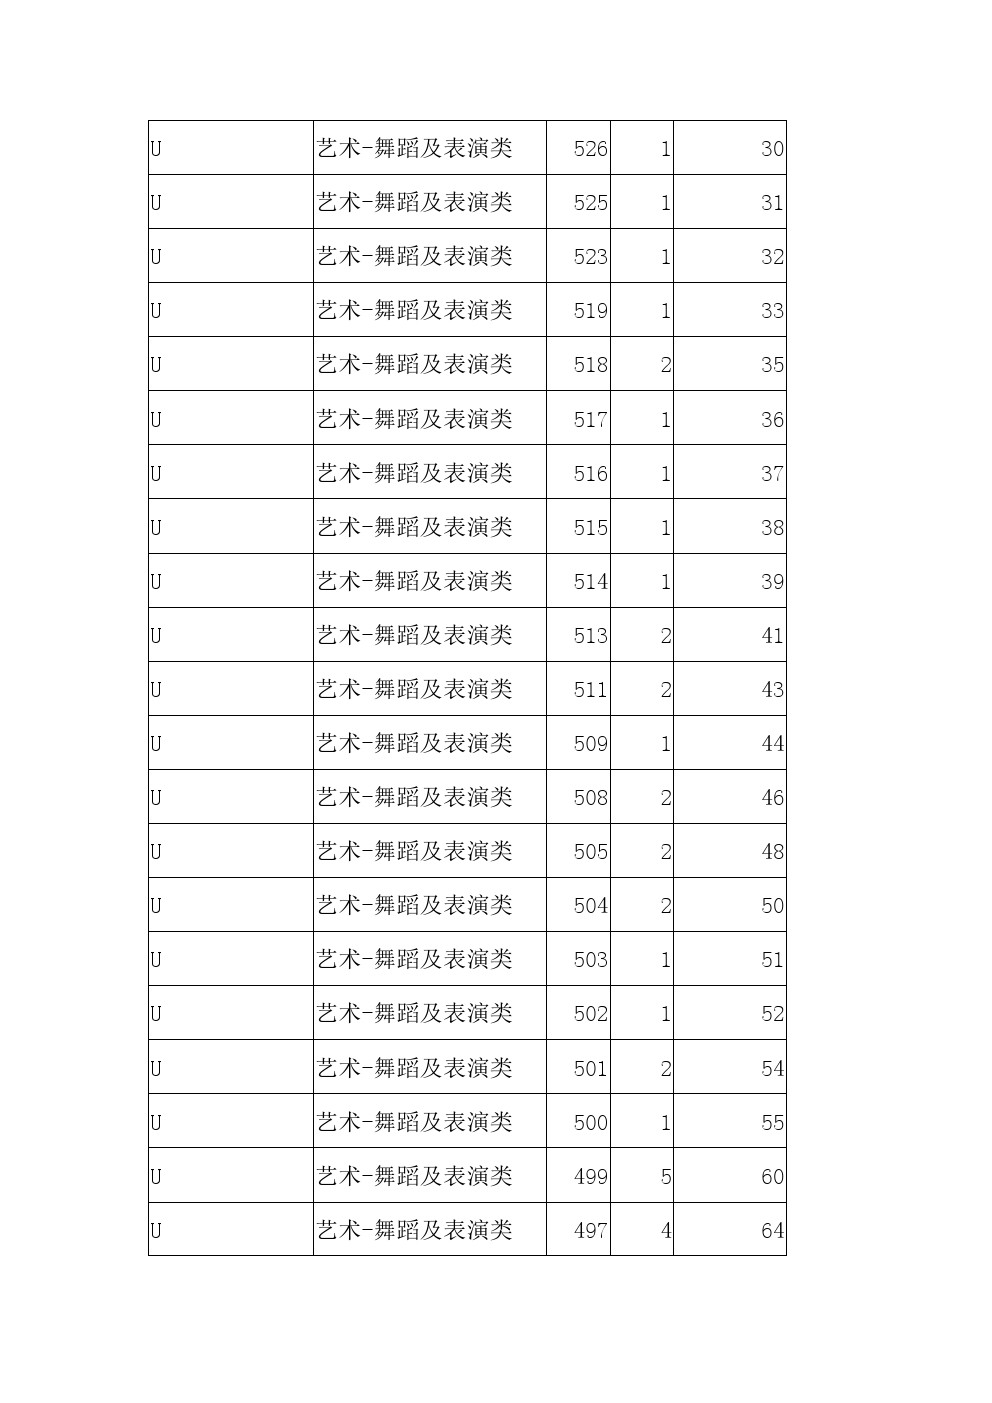 2021年河北省高职单招考试八类舞蹈及表演类一分一档表 